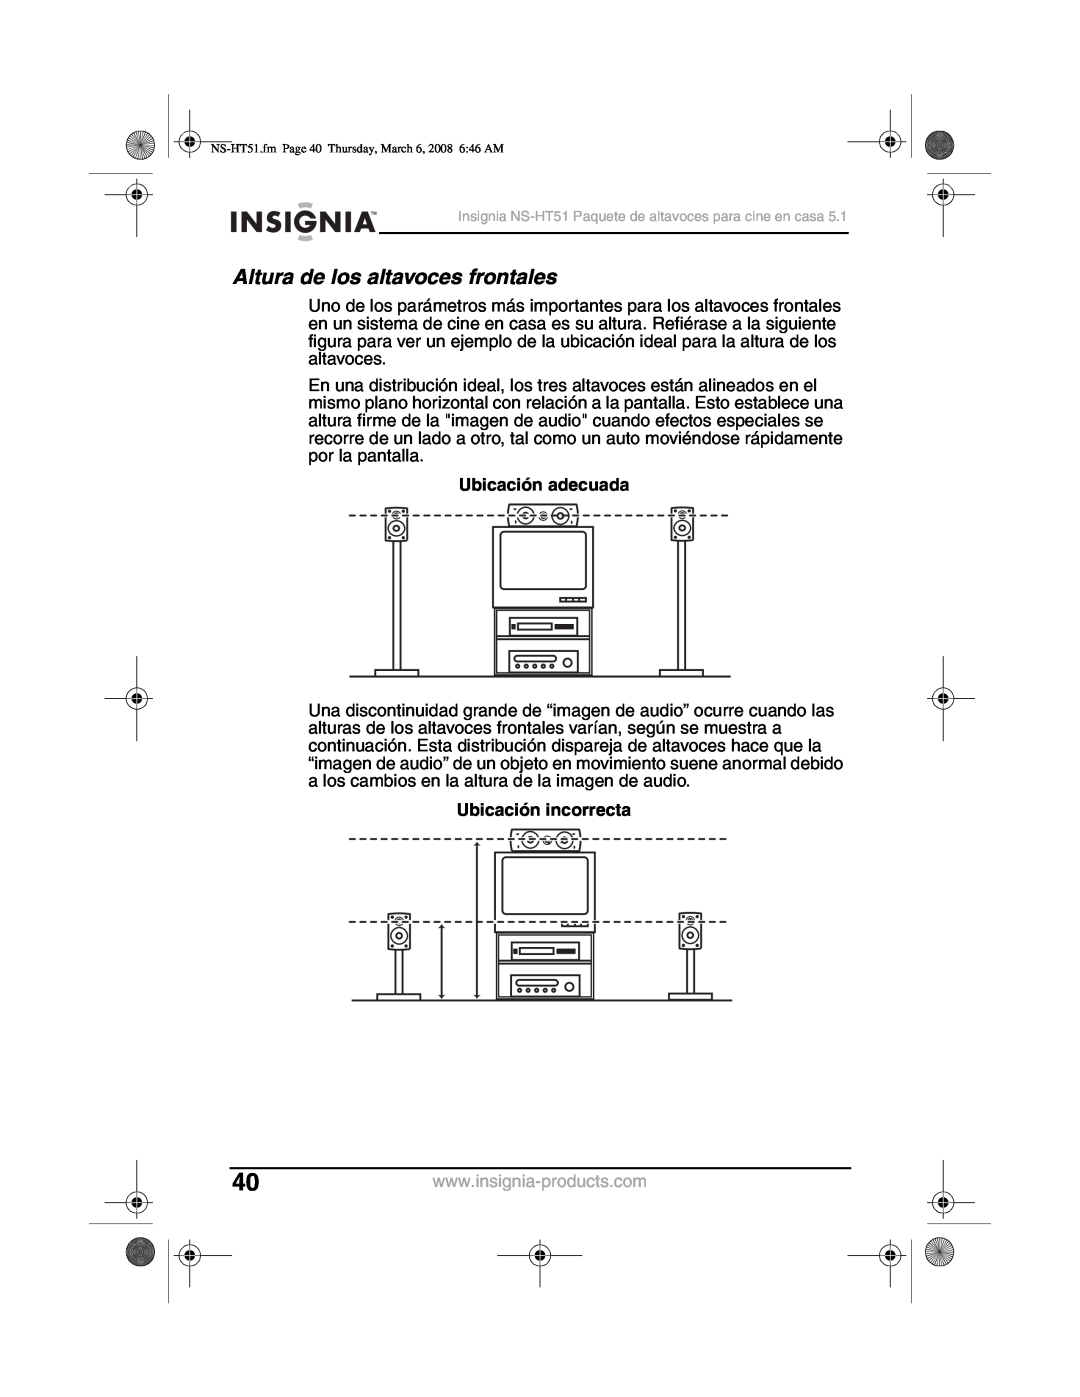 Insignia NS-HT51 manual Altura de los altavoces frontales, Ubicación adecuada, Ubicación incorrecta 